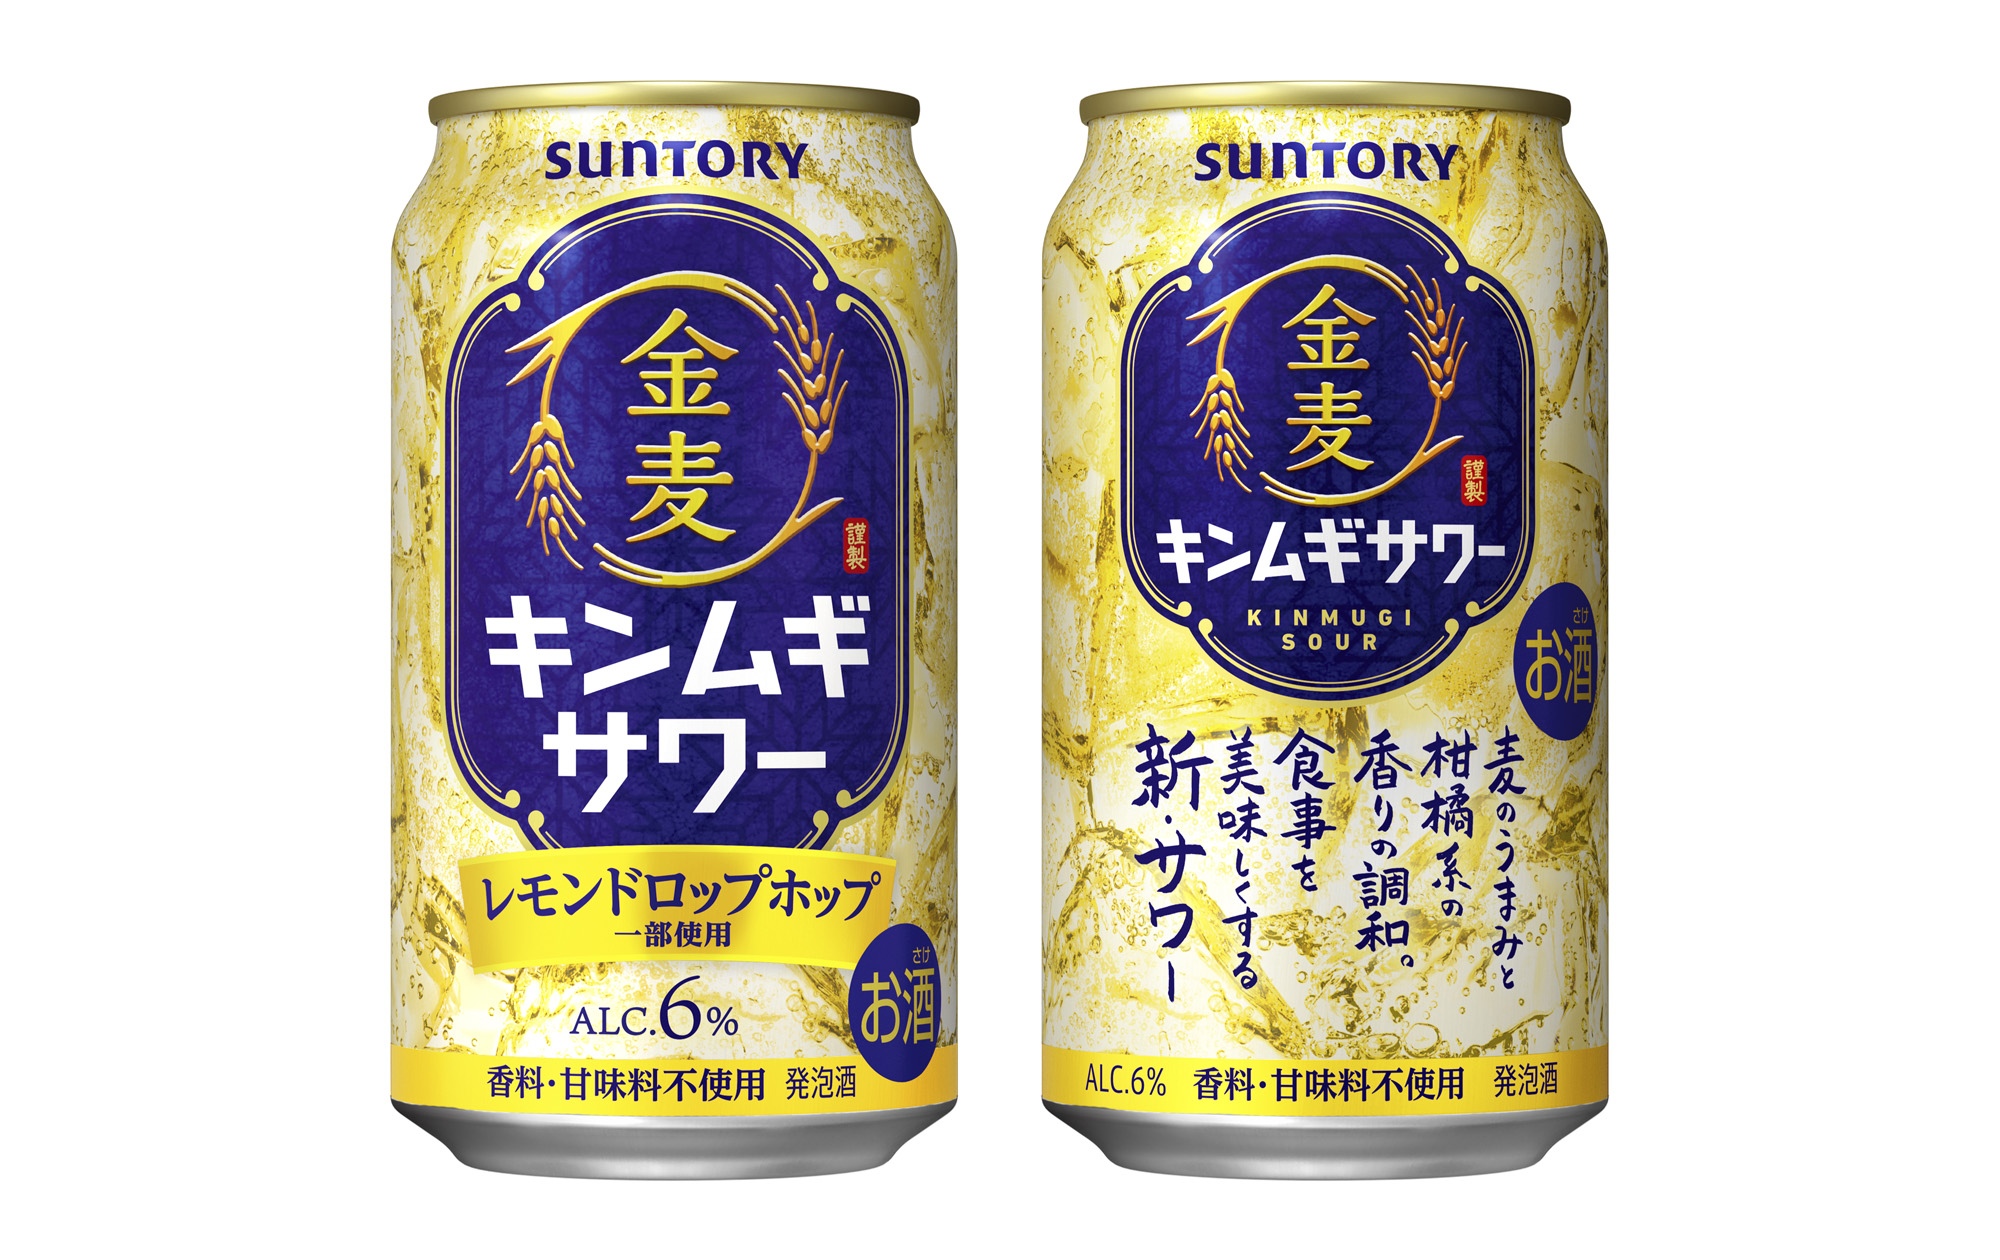 "サワー"の味わいをビールの醸造技術で実現「金麦サワー」北海道エリア期間限定新発売